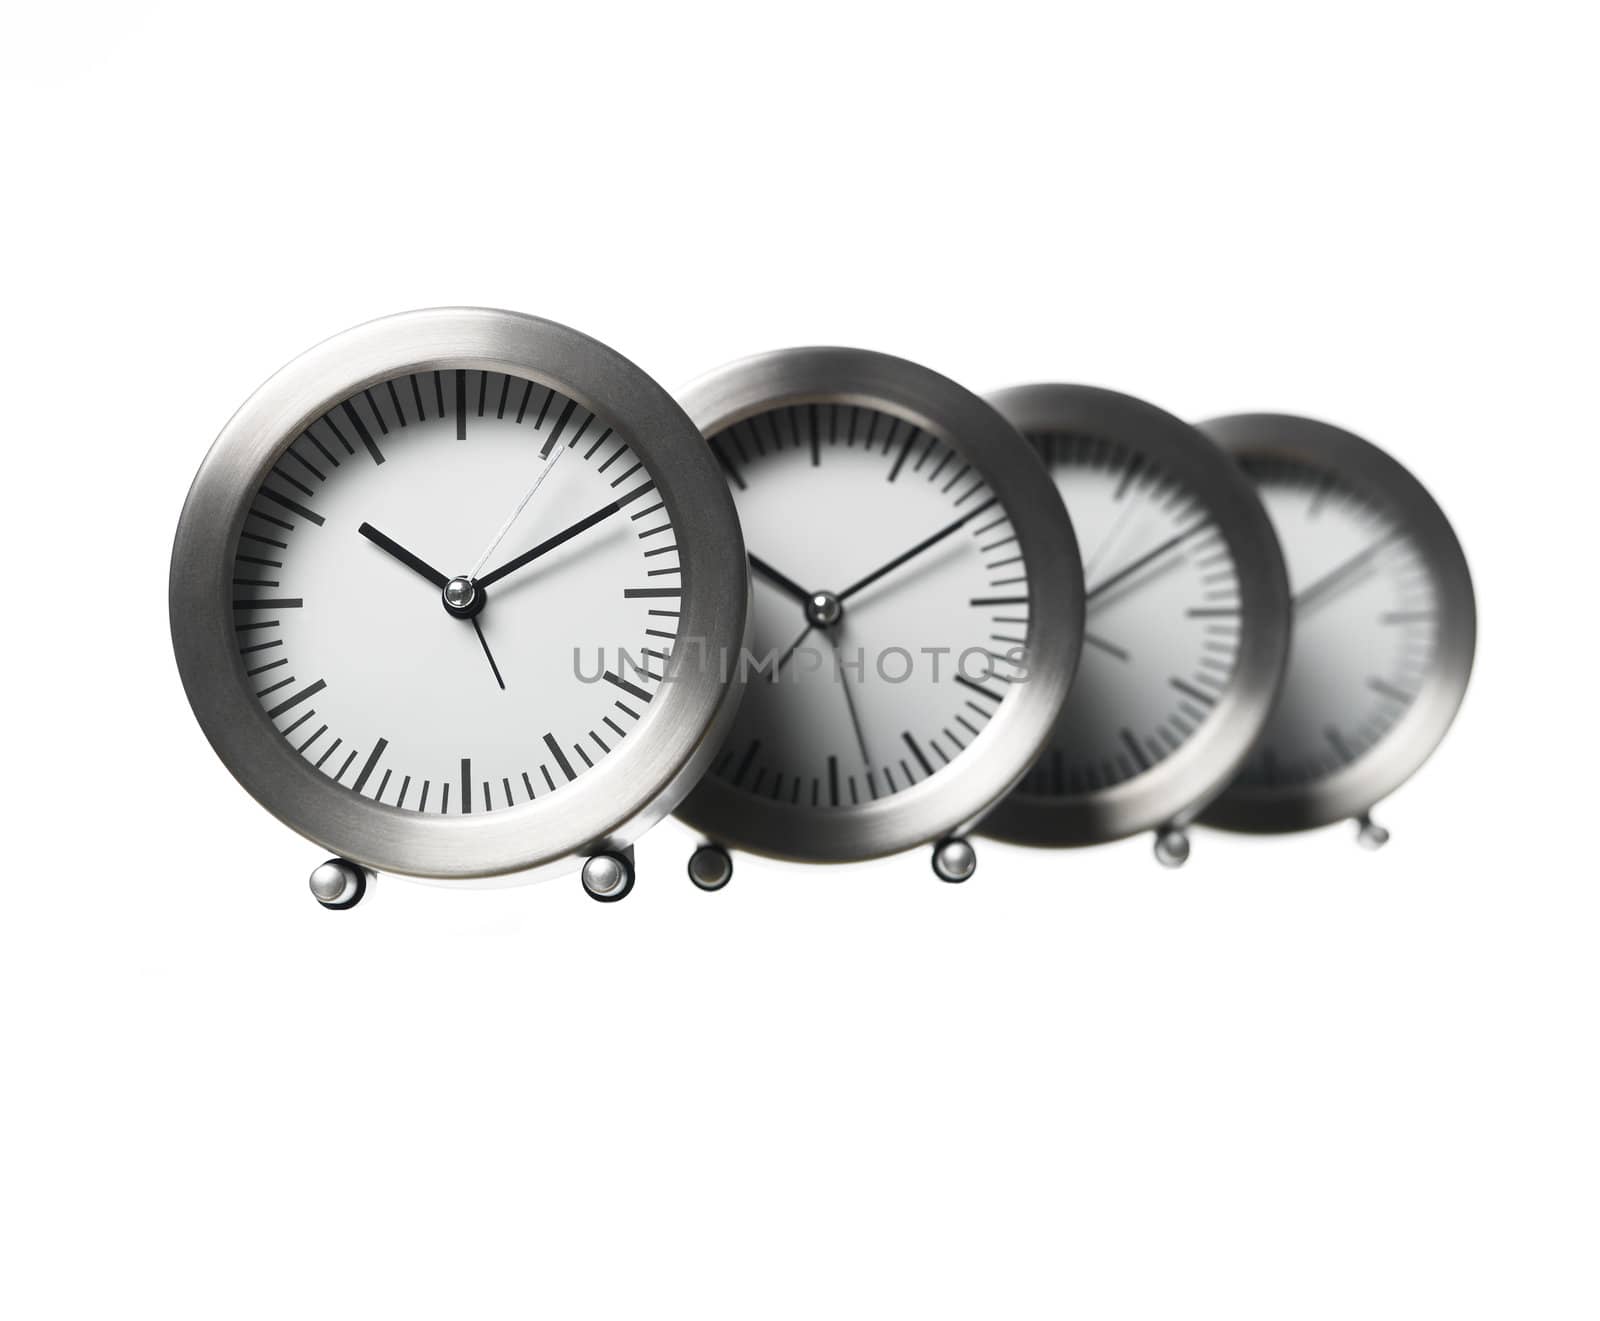 clocks by gemenacom